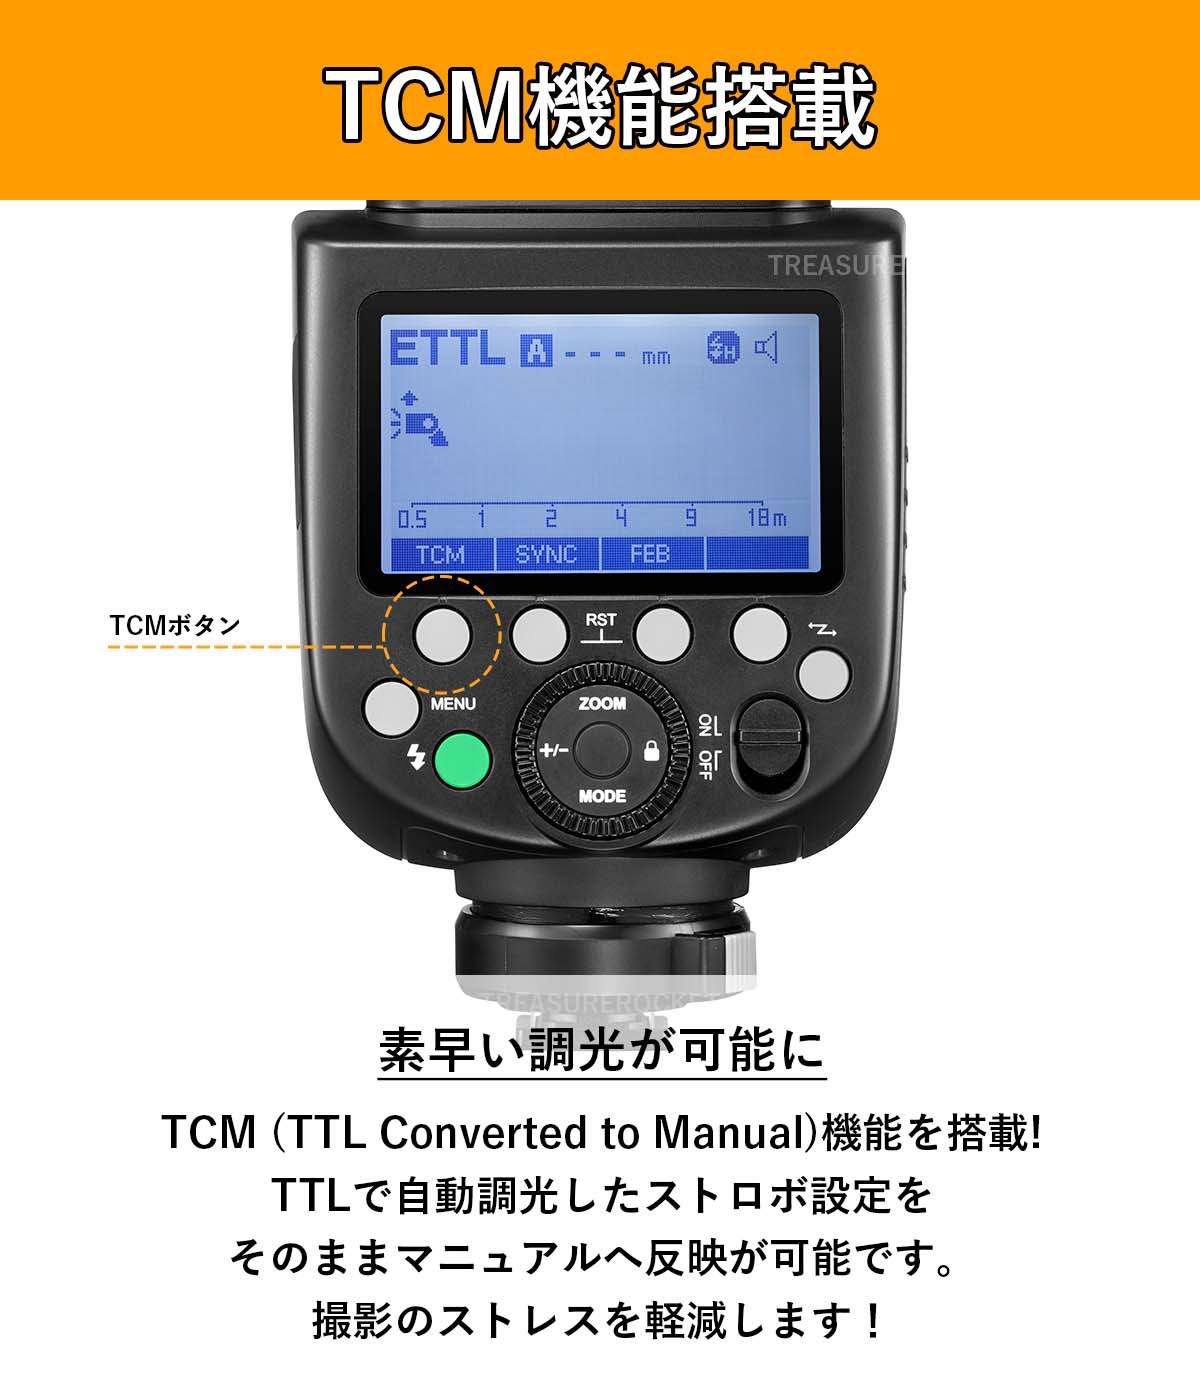 [正規品 技適マーク 日本語説明書付] Godox ゴドックス TT685IIC TT685II-C TT685ii Canon キャノン対応  GN60 TTL HSS 1/8000s TCM ストロボ スピードライト [カラーフィルター/デイフューザー]